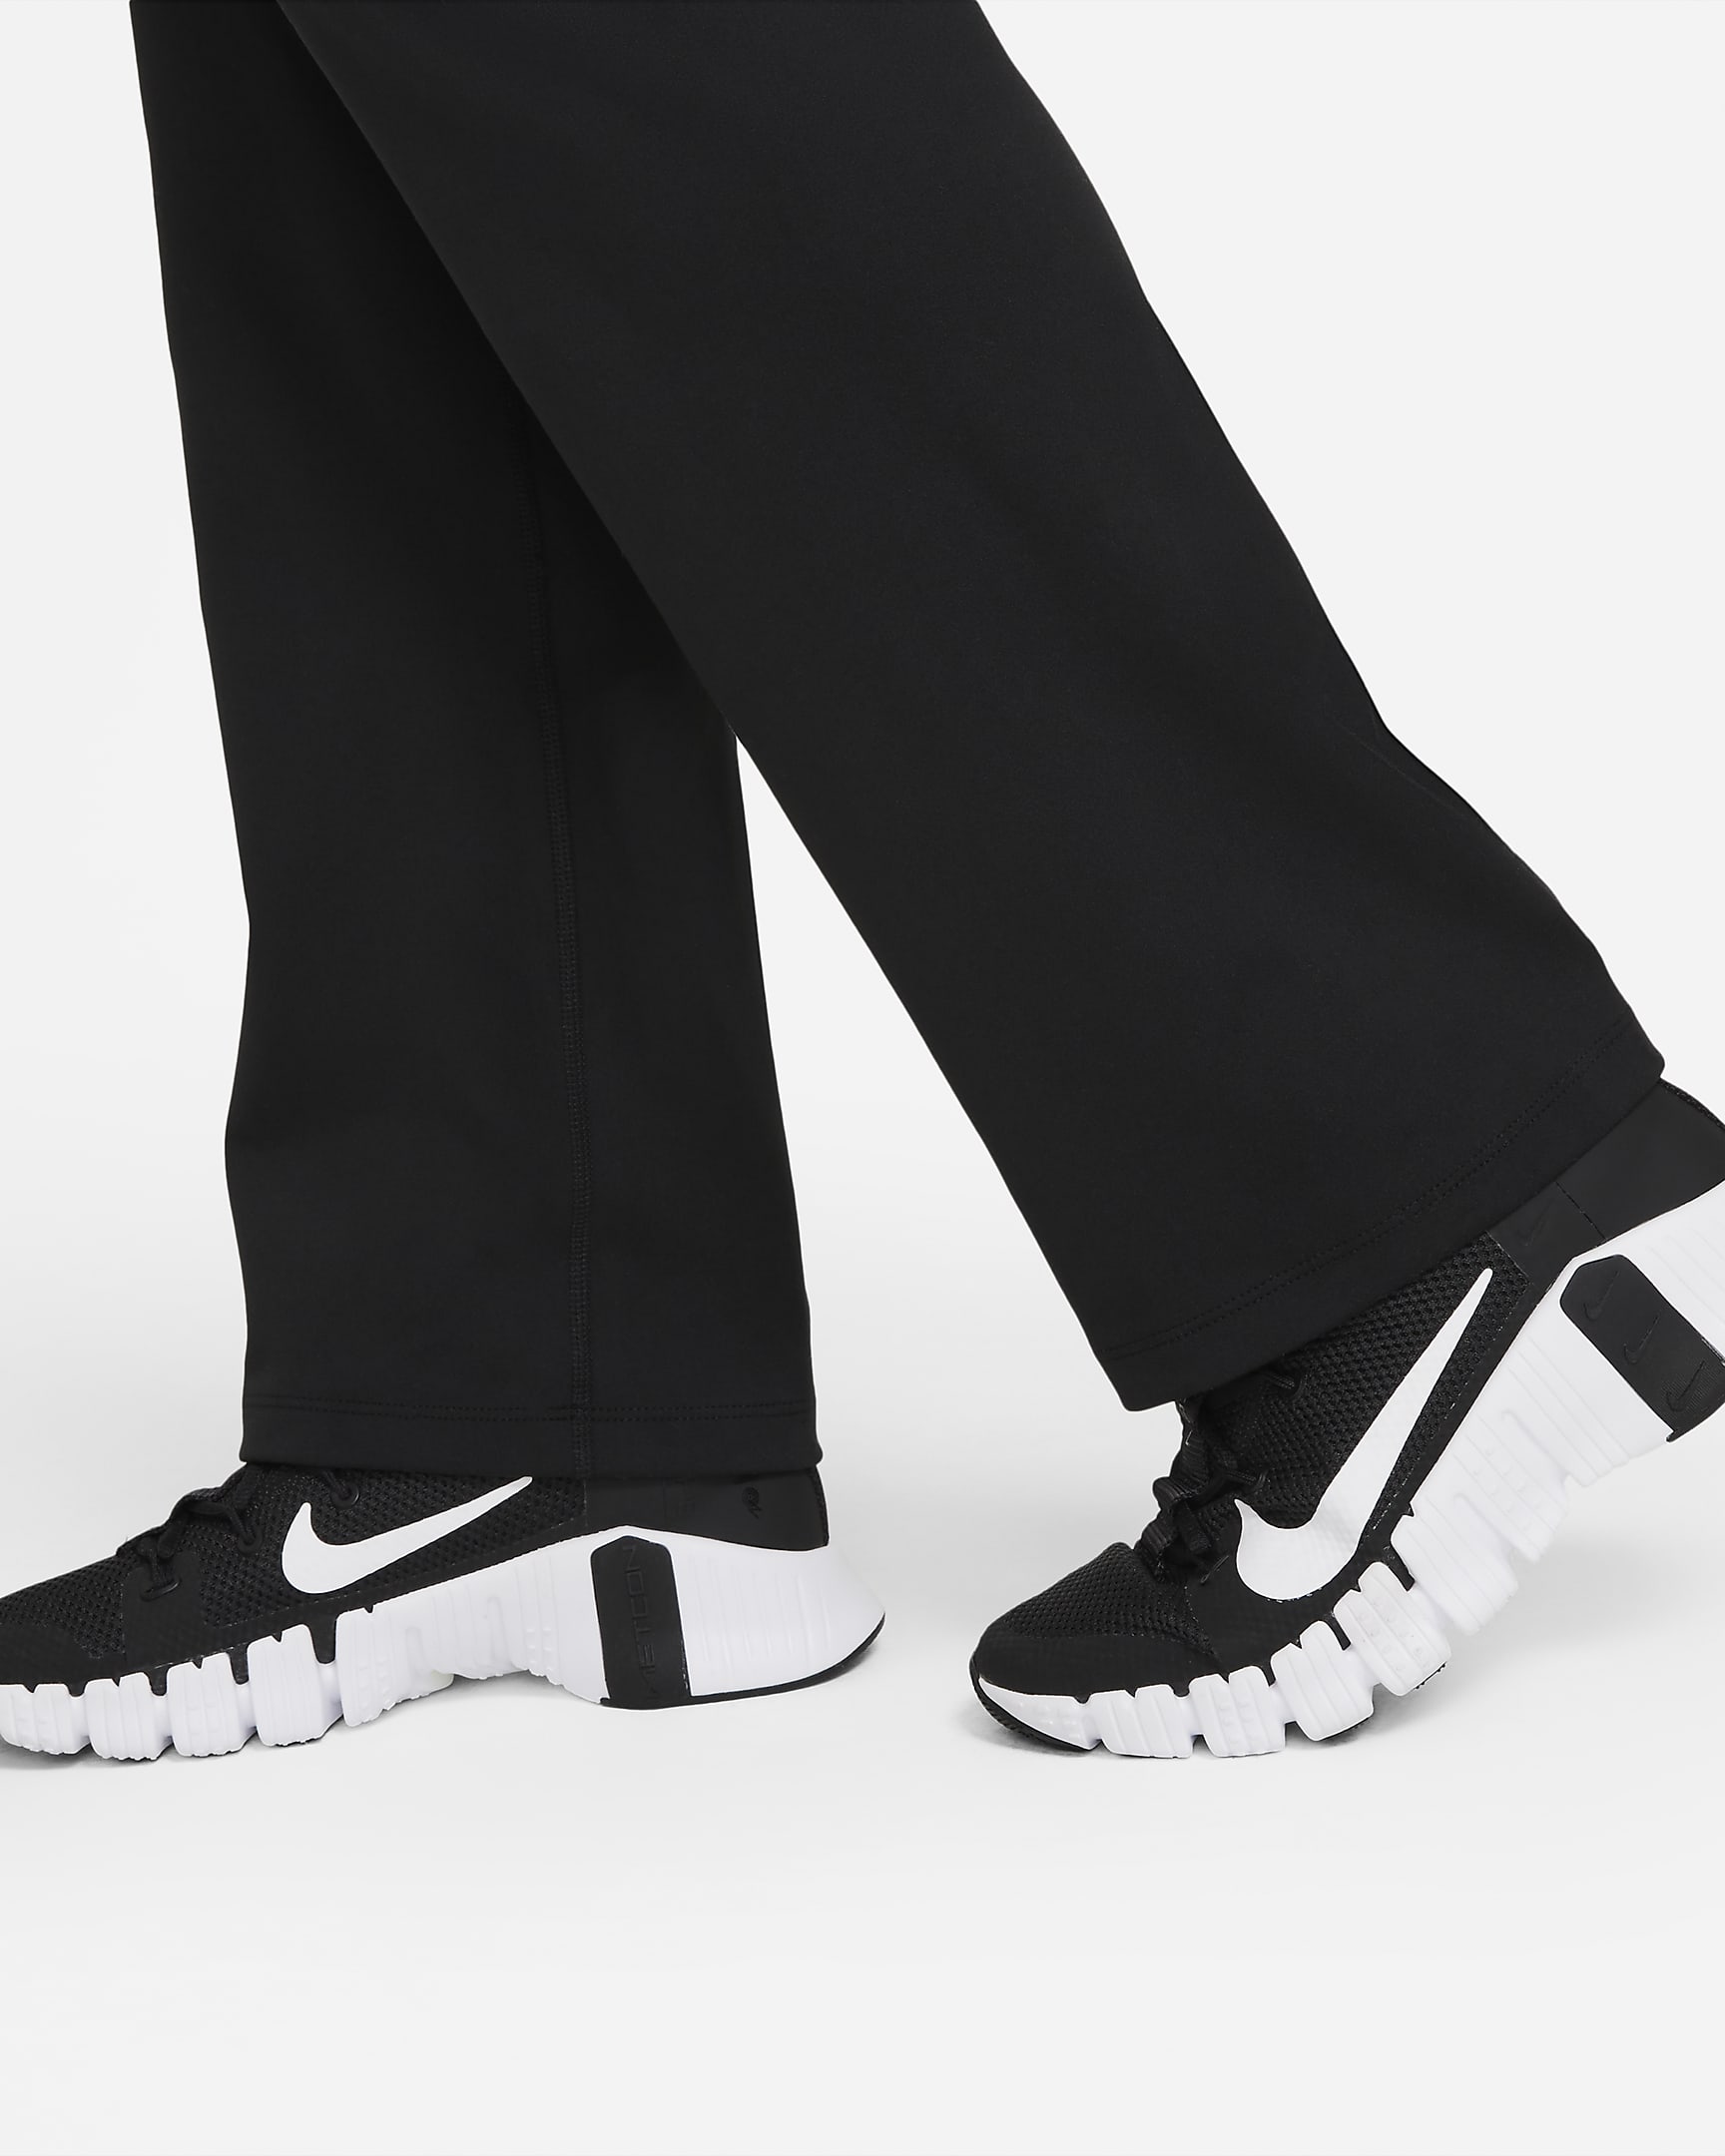 Nike Power treningsbukse til dame - Svart/Svart